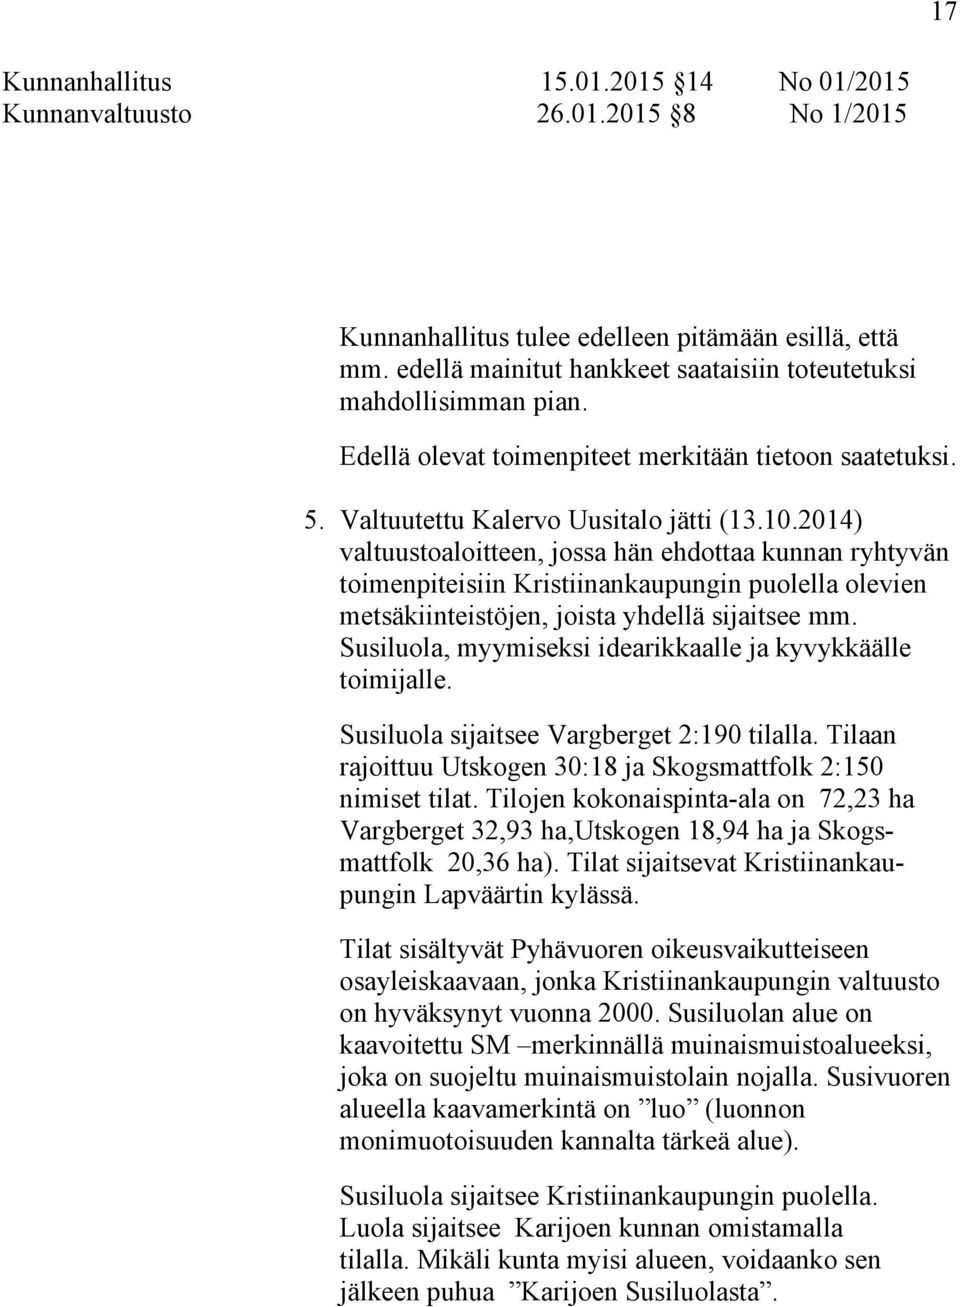 2014) valtuustoaloitteen, jossa hän ehdottaa kunnan ryhtyvän toimenpiteisiin Kristiinankaupungin puolella olevien metsäkiinteistöjen, joista yhdellä sijaitsee mm.